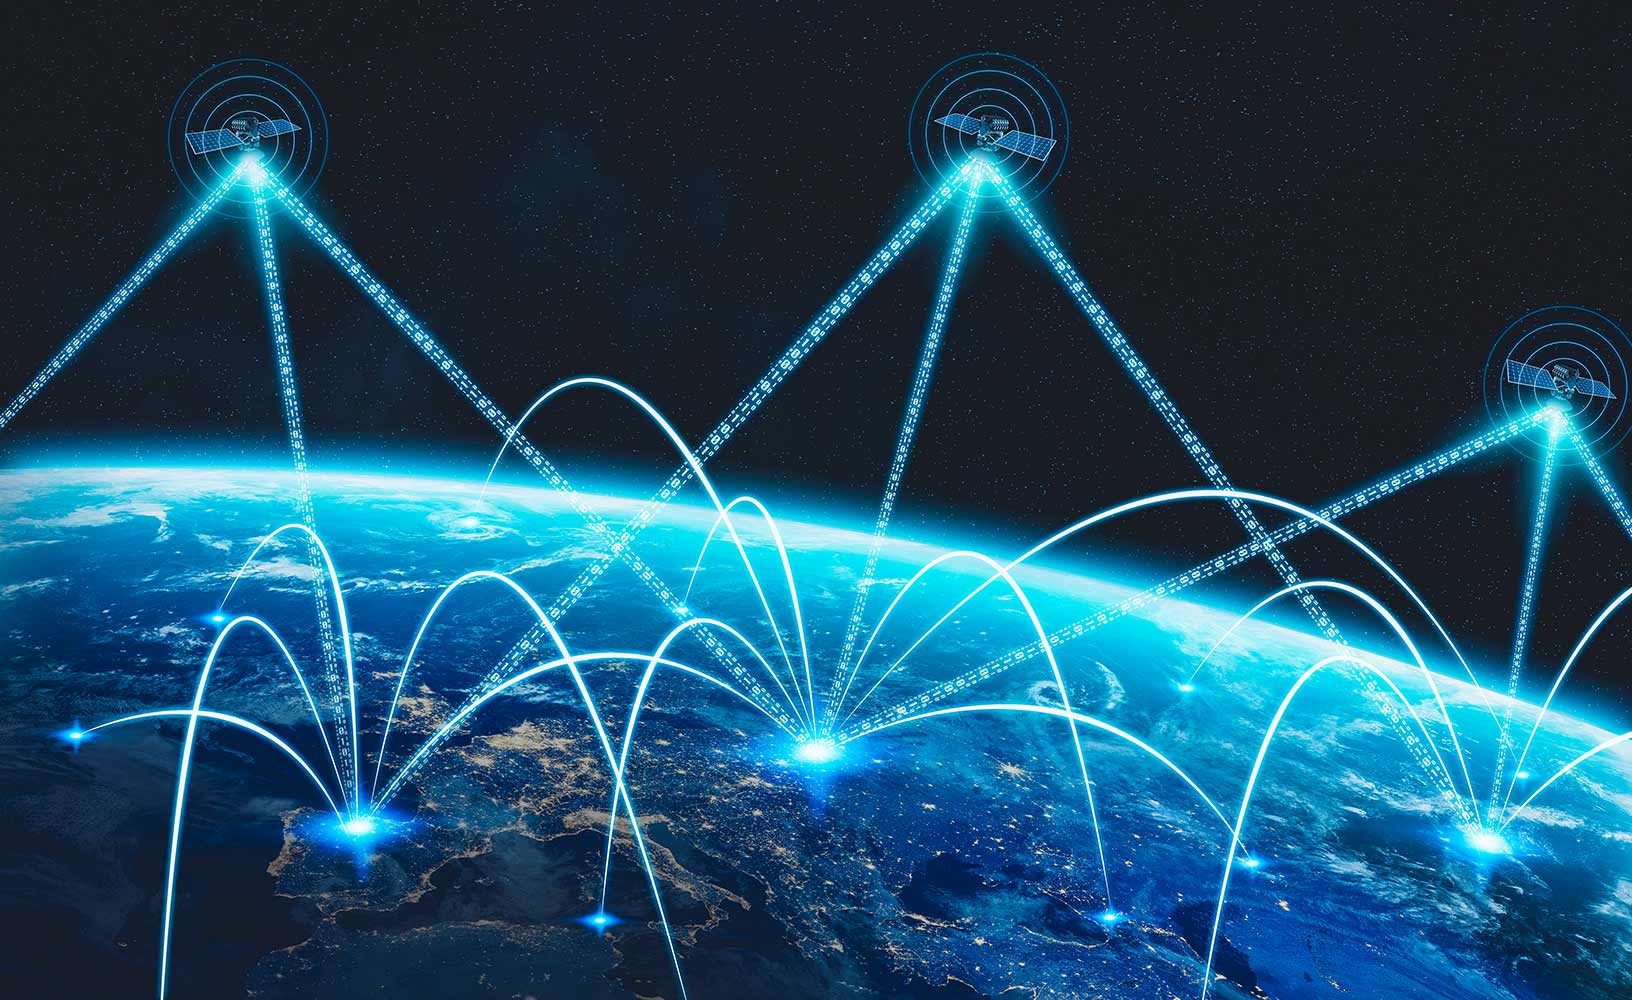 Una costellazione di satelliti GNSS che trasmette i propri segnali a terra per l'utilizzo nel calcolo del posizionamento, della navigazione e della temporizzazione in tutto il mondo.